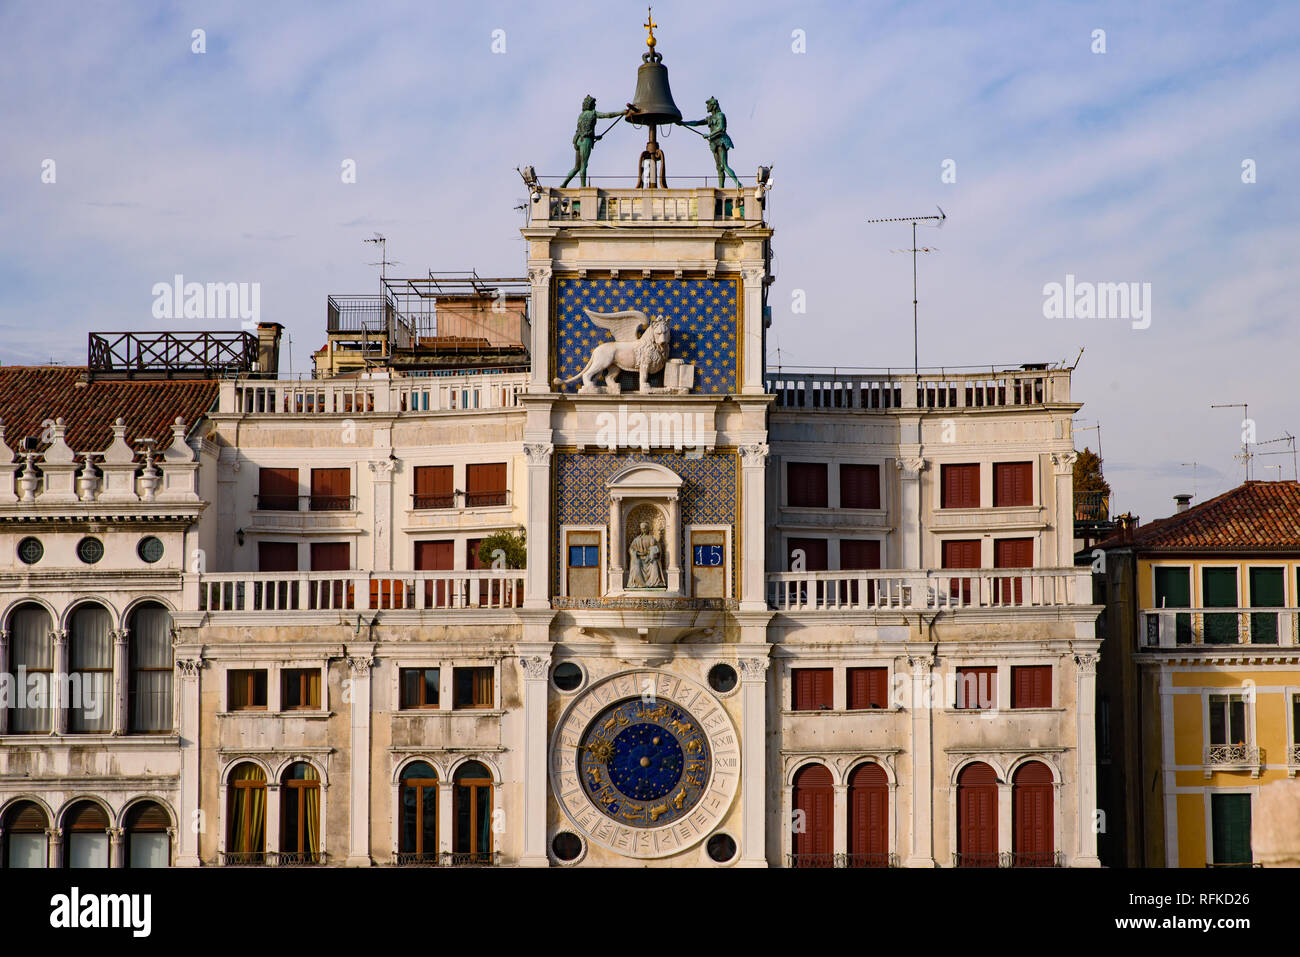 La tour de l'horloge à la place Saint-Marc (Piazza San Marco), Venise, Italie Banque D'Images